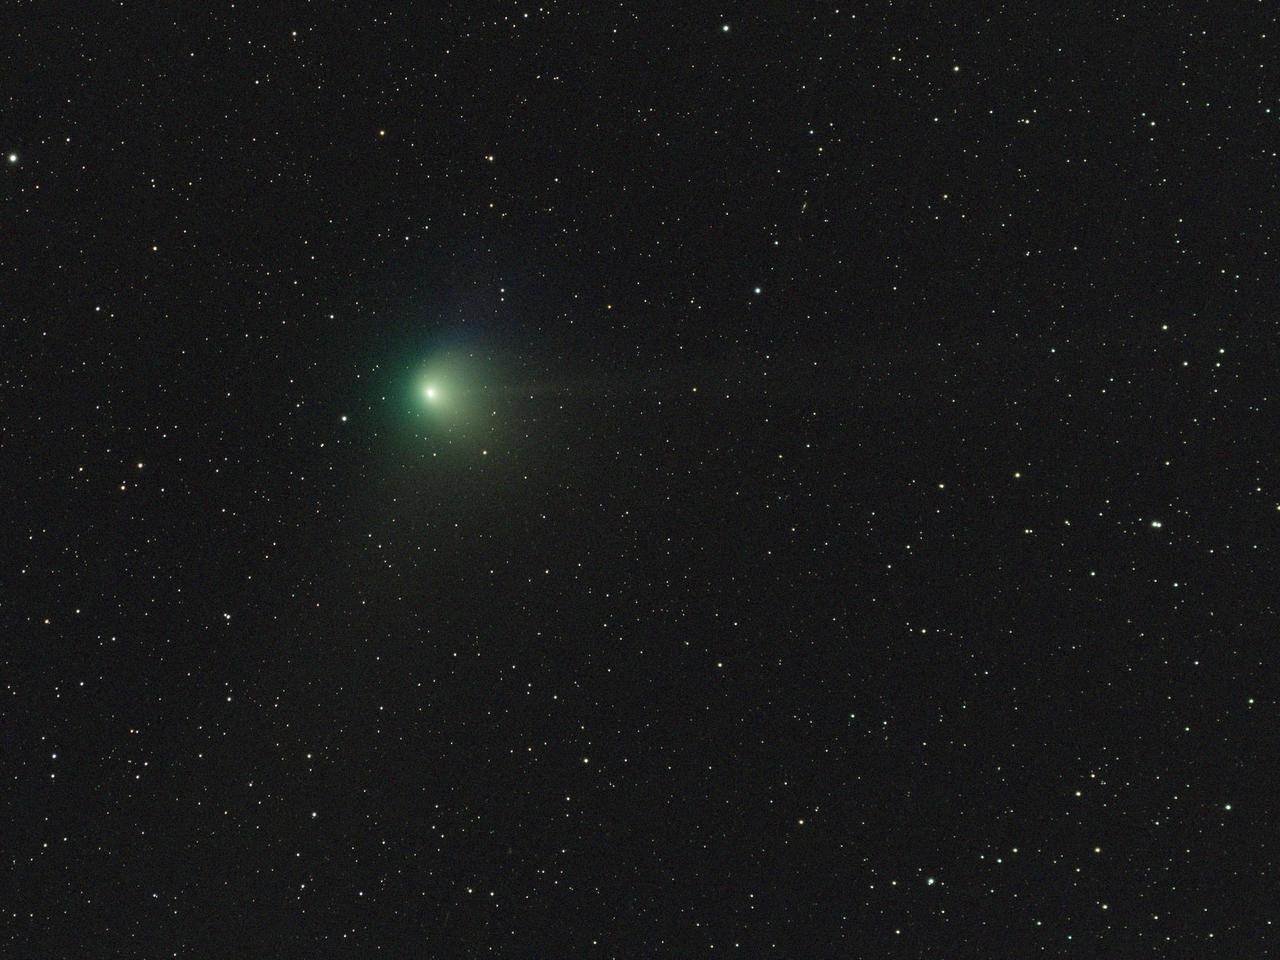 彗星 ZTF (C/2022 E3) 于 2023 年 1 月 31 日在日本国家天文台三鹰校区拍摄。